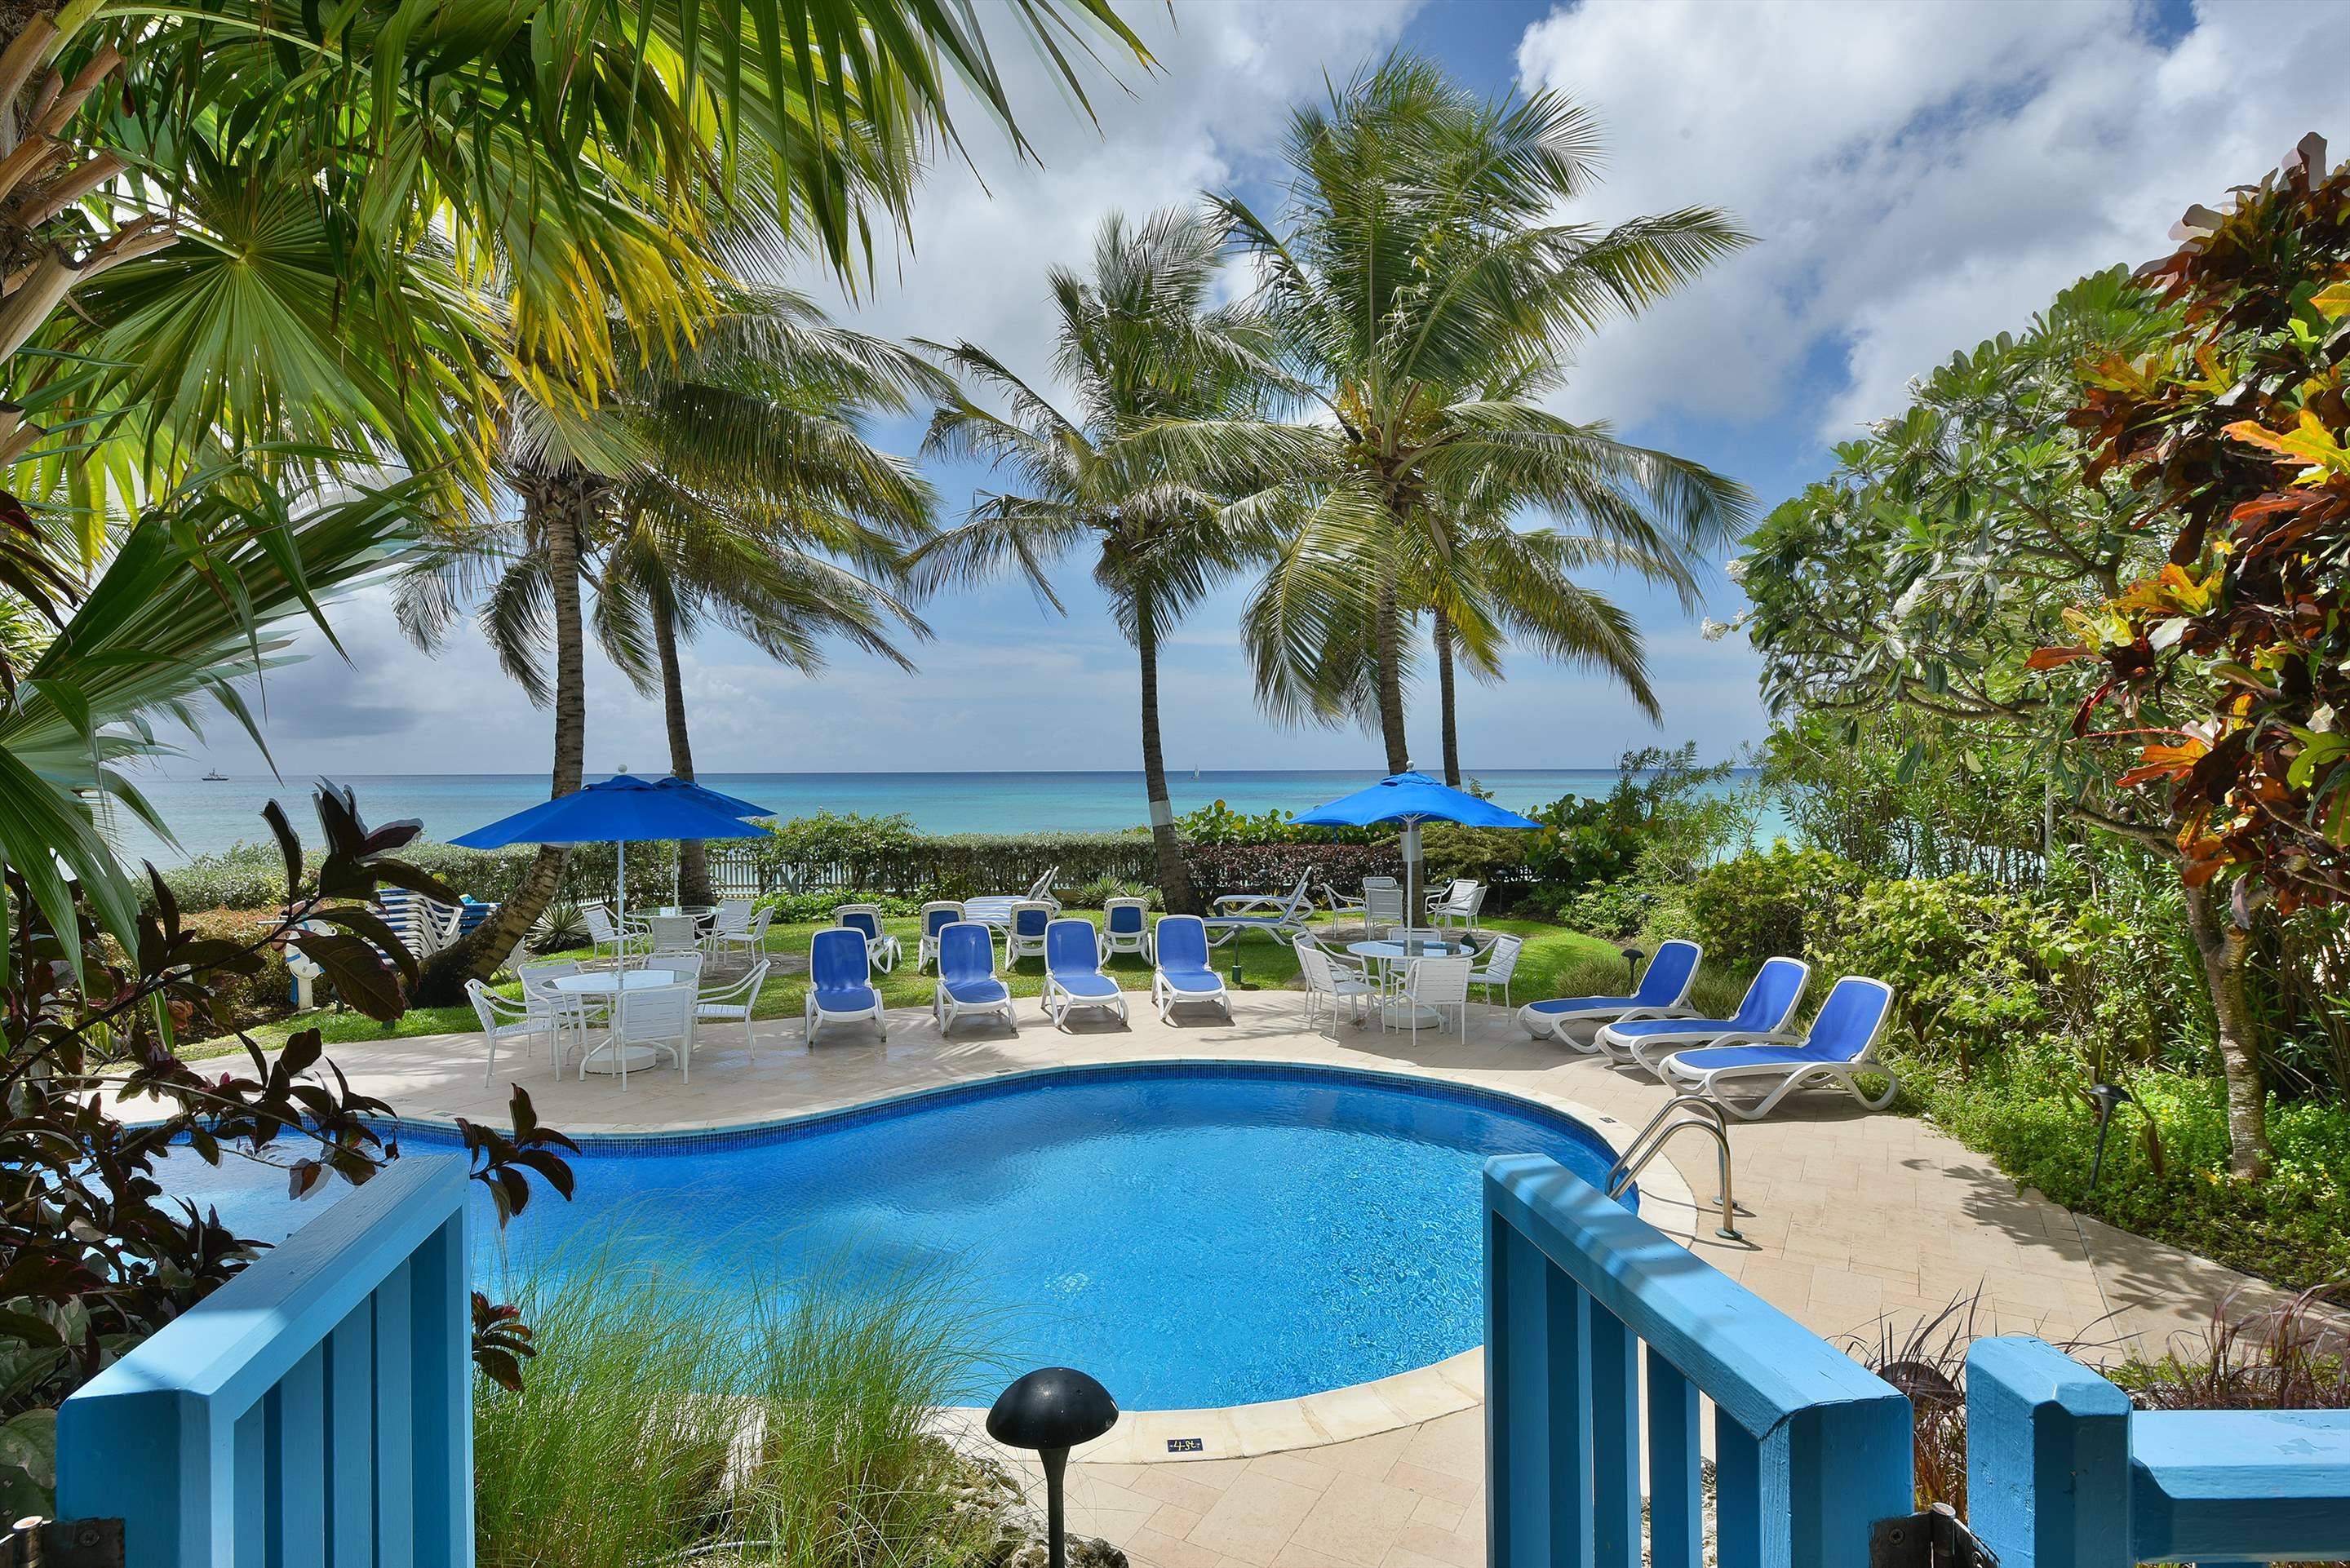 Maxwell Beach Villas 101, 2 bedroom, 2 bedroom apartment in St. Lawrence Gap & South Coast, Barbados Photo #7